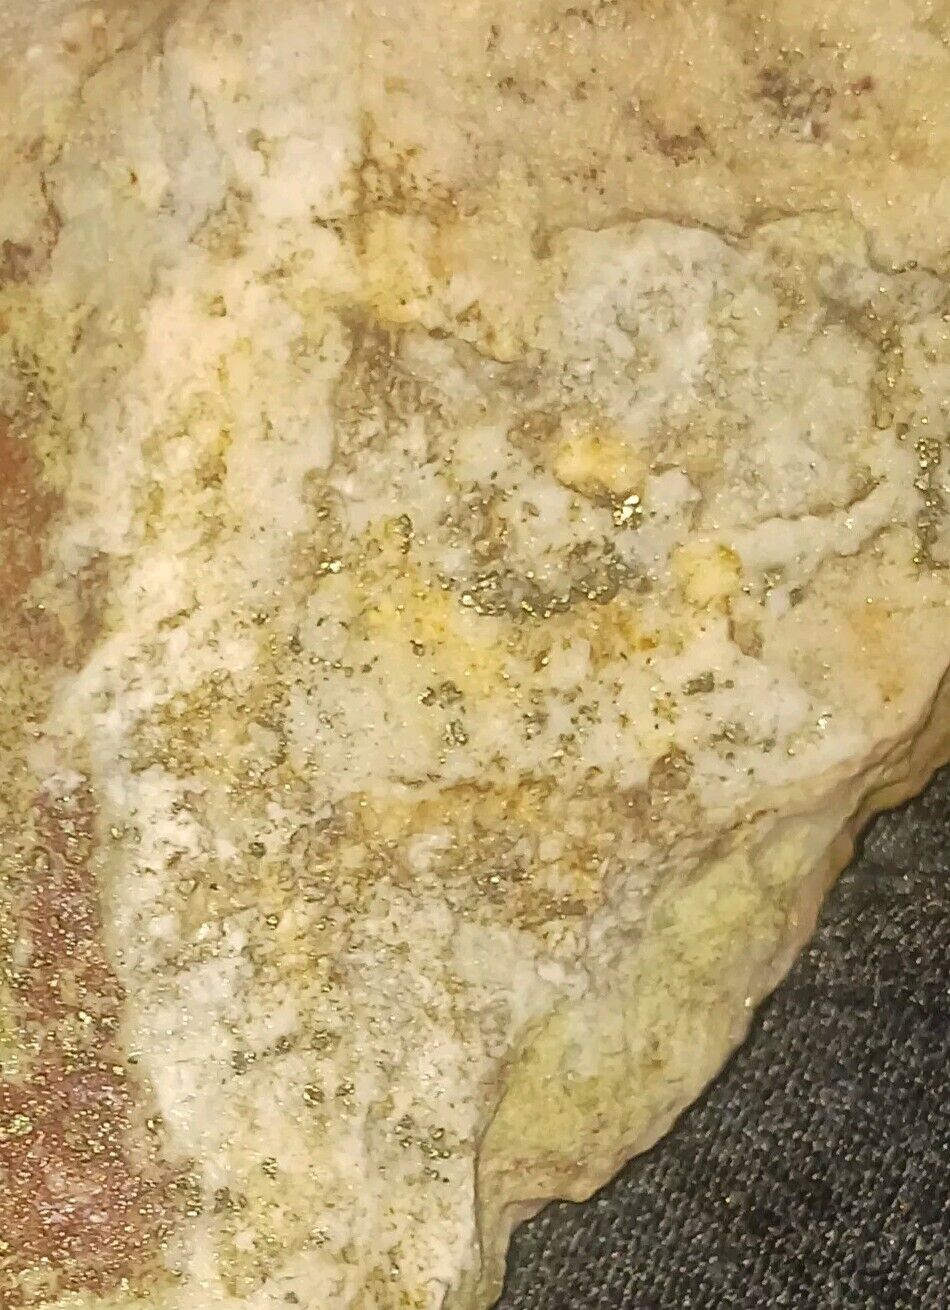 490.447 Grams Rare Arizona Fine Gold Ore Natural Vein Lode Gold 2% Gold Estimate